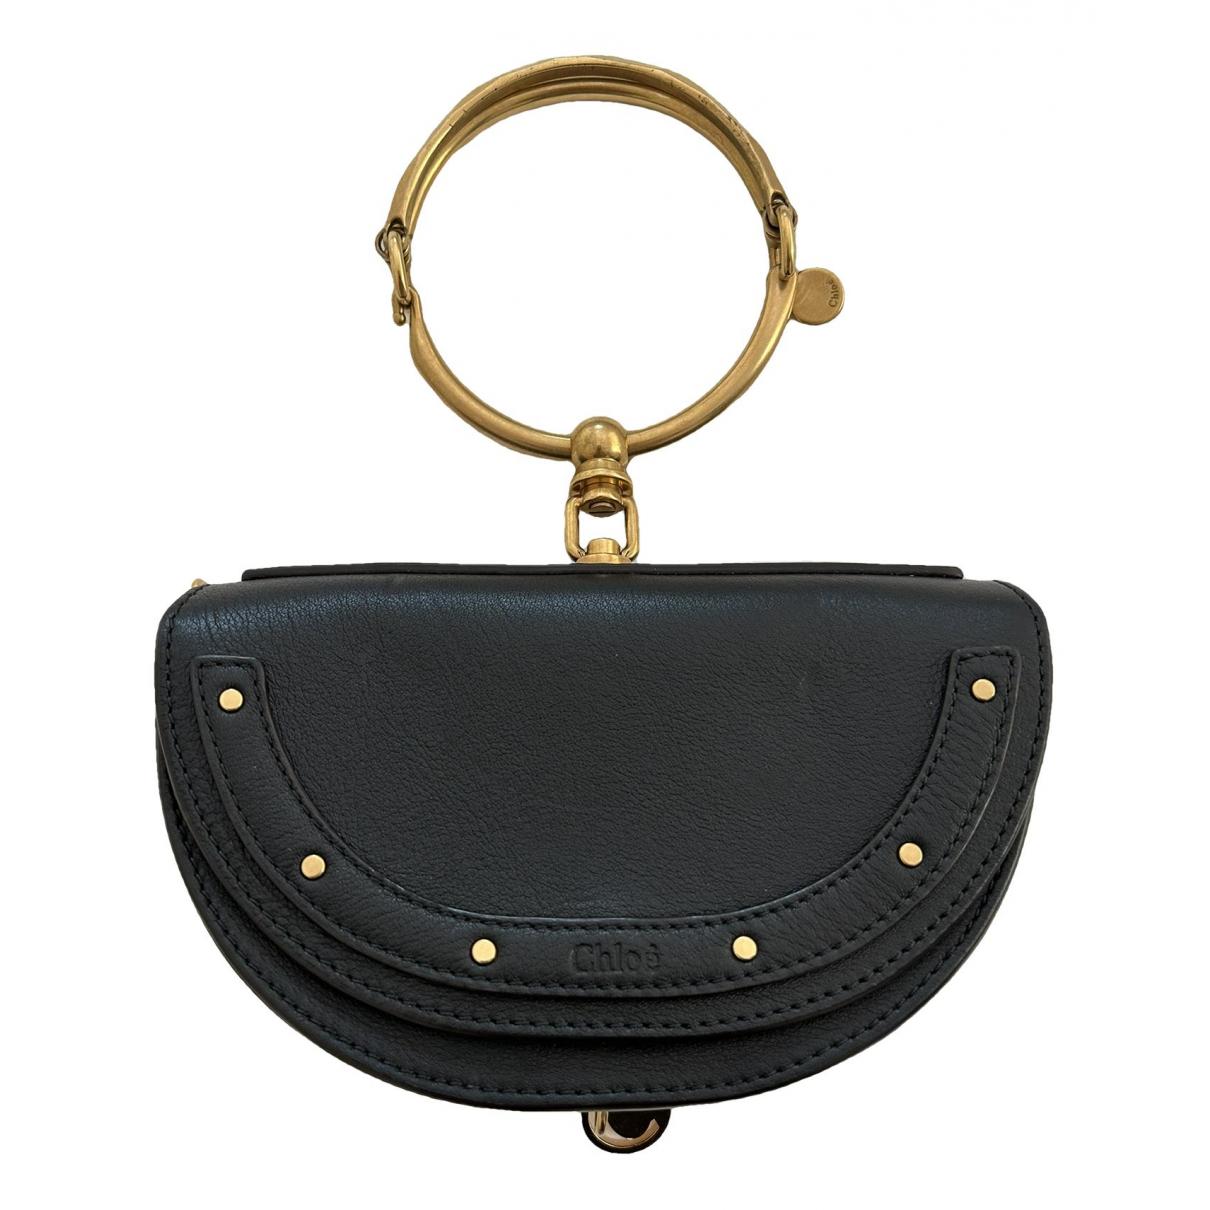 Chloé Nile Bracelet Bag